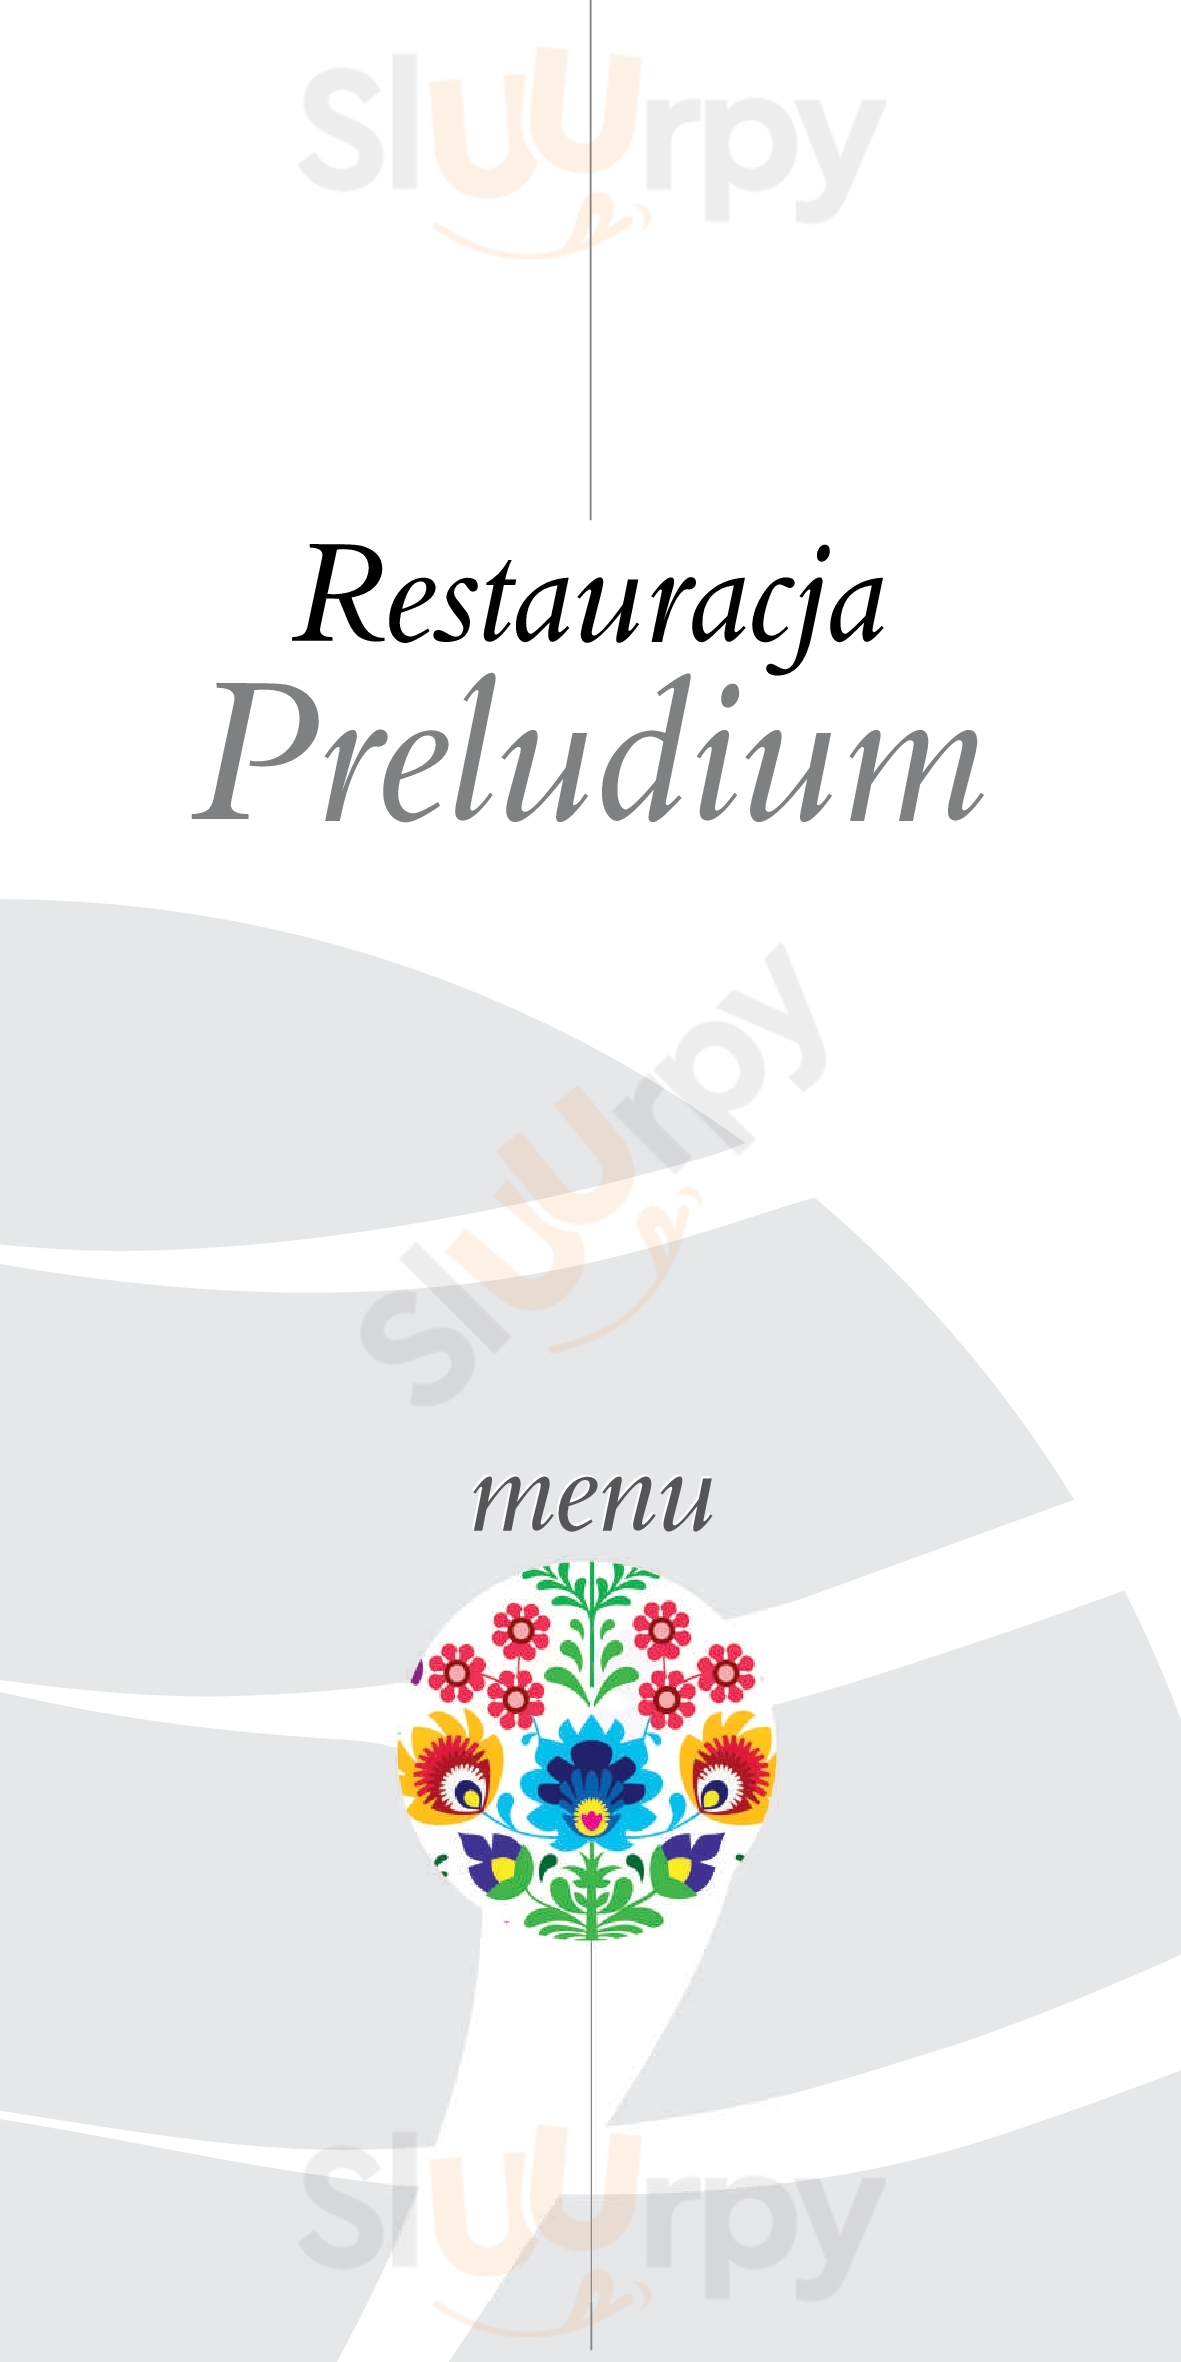 Restauracja Preludium Ciechocinek Menu - 1